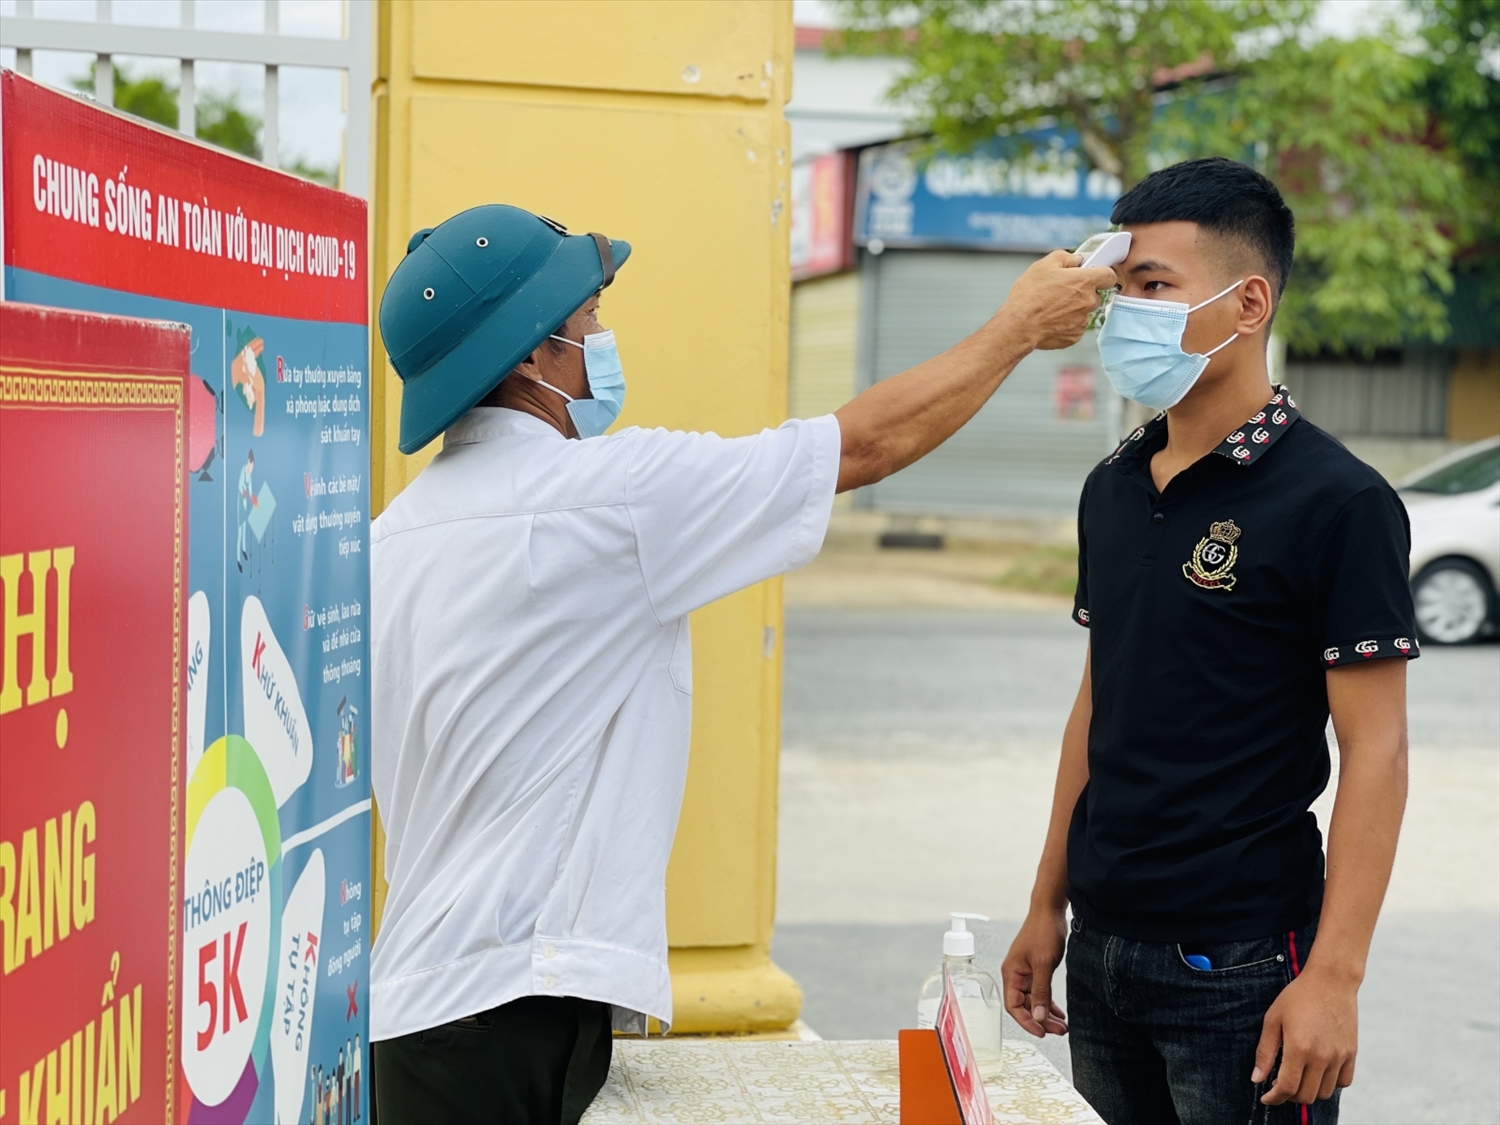 Thí sinh Hà Tĩnh được đo thân nhiệt và sát khuẩn tay trước khi lên xe đến Bắc Giang dự thi tốt nghiệp THPT đợt 2.